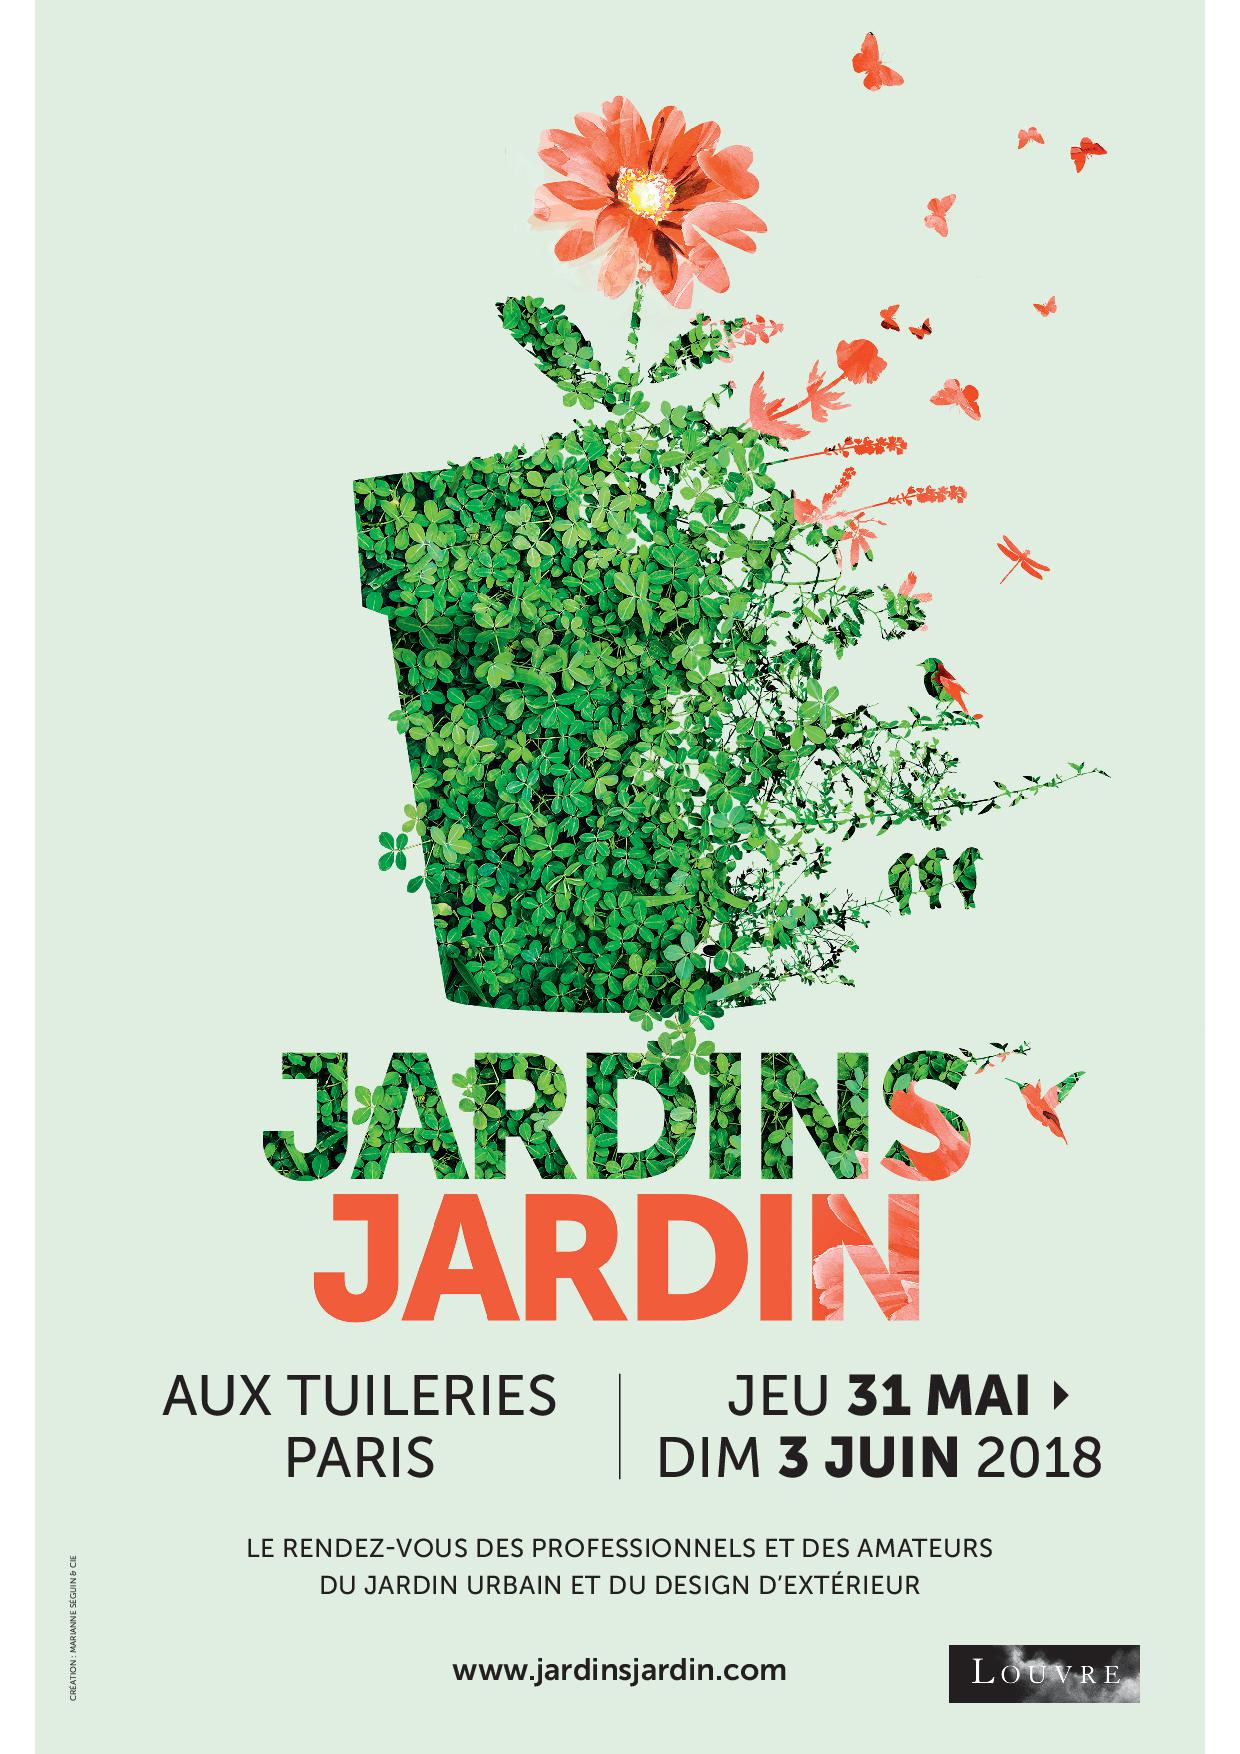 JARDINS JARDINS Jardins-Jardins, du jeudi 31 mai au dimanche 3 juin 2018 aux Tuileries